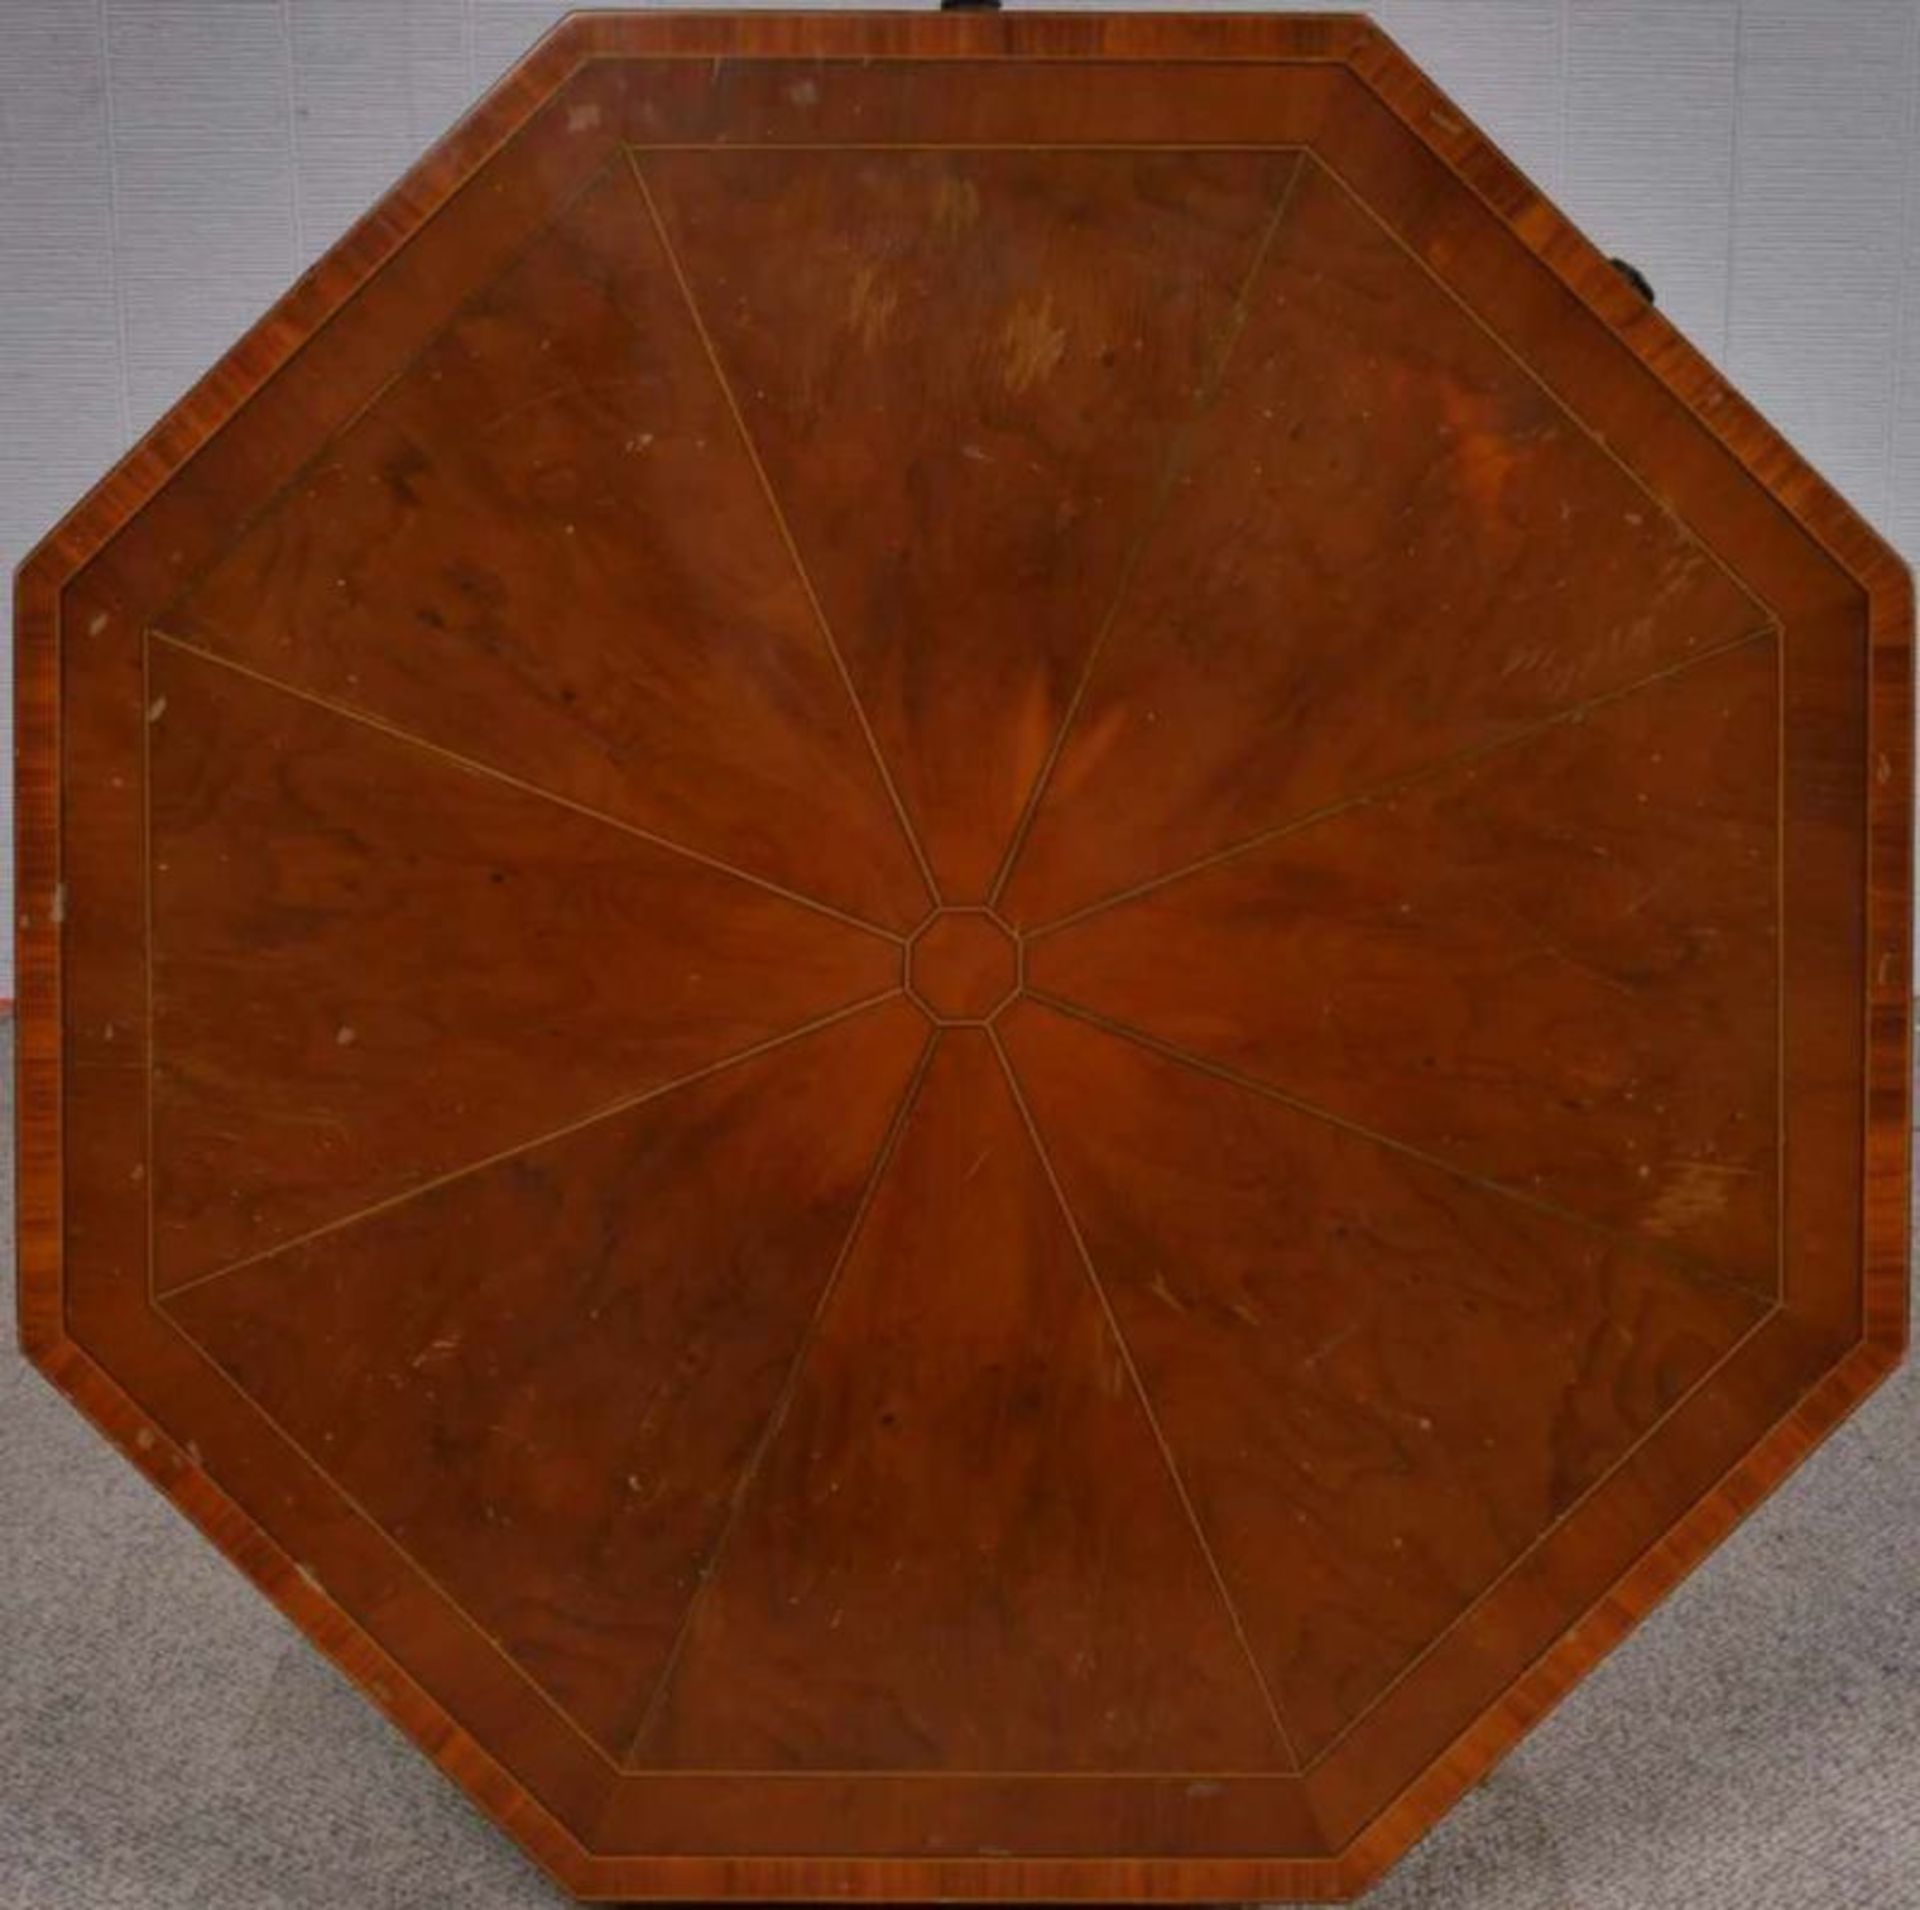 Oktagonales Beistelltischchen mit Blend-Schubladen, Eibe, englisches Stilmöbel. Ca. 69 x 50 x 50 cm. - Image 6 of 9